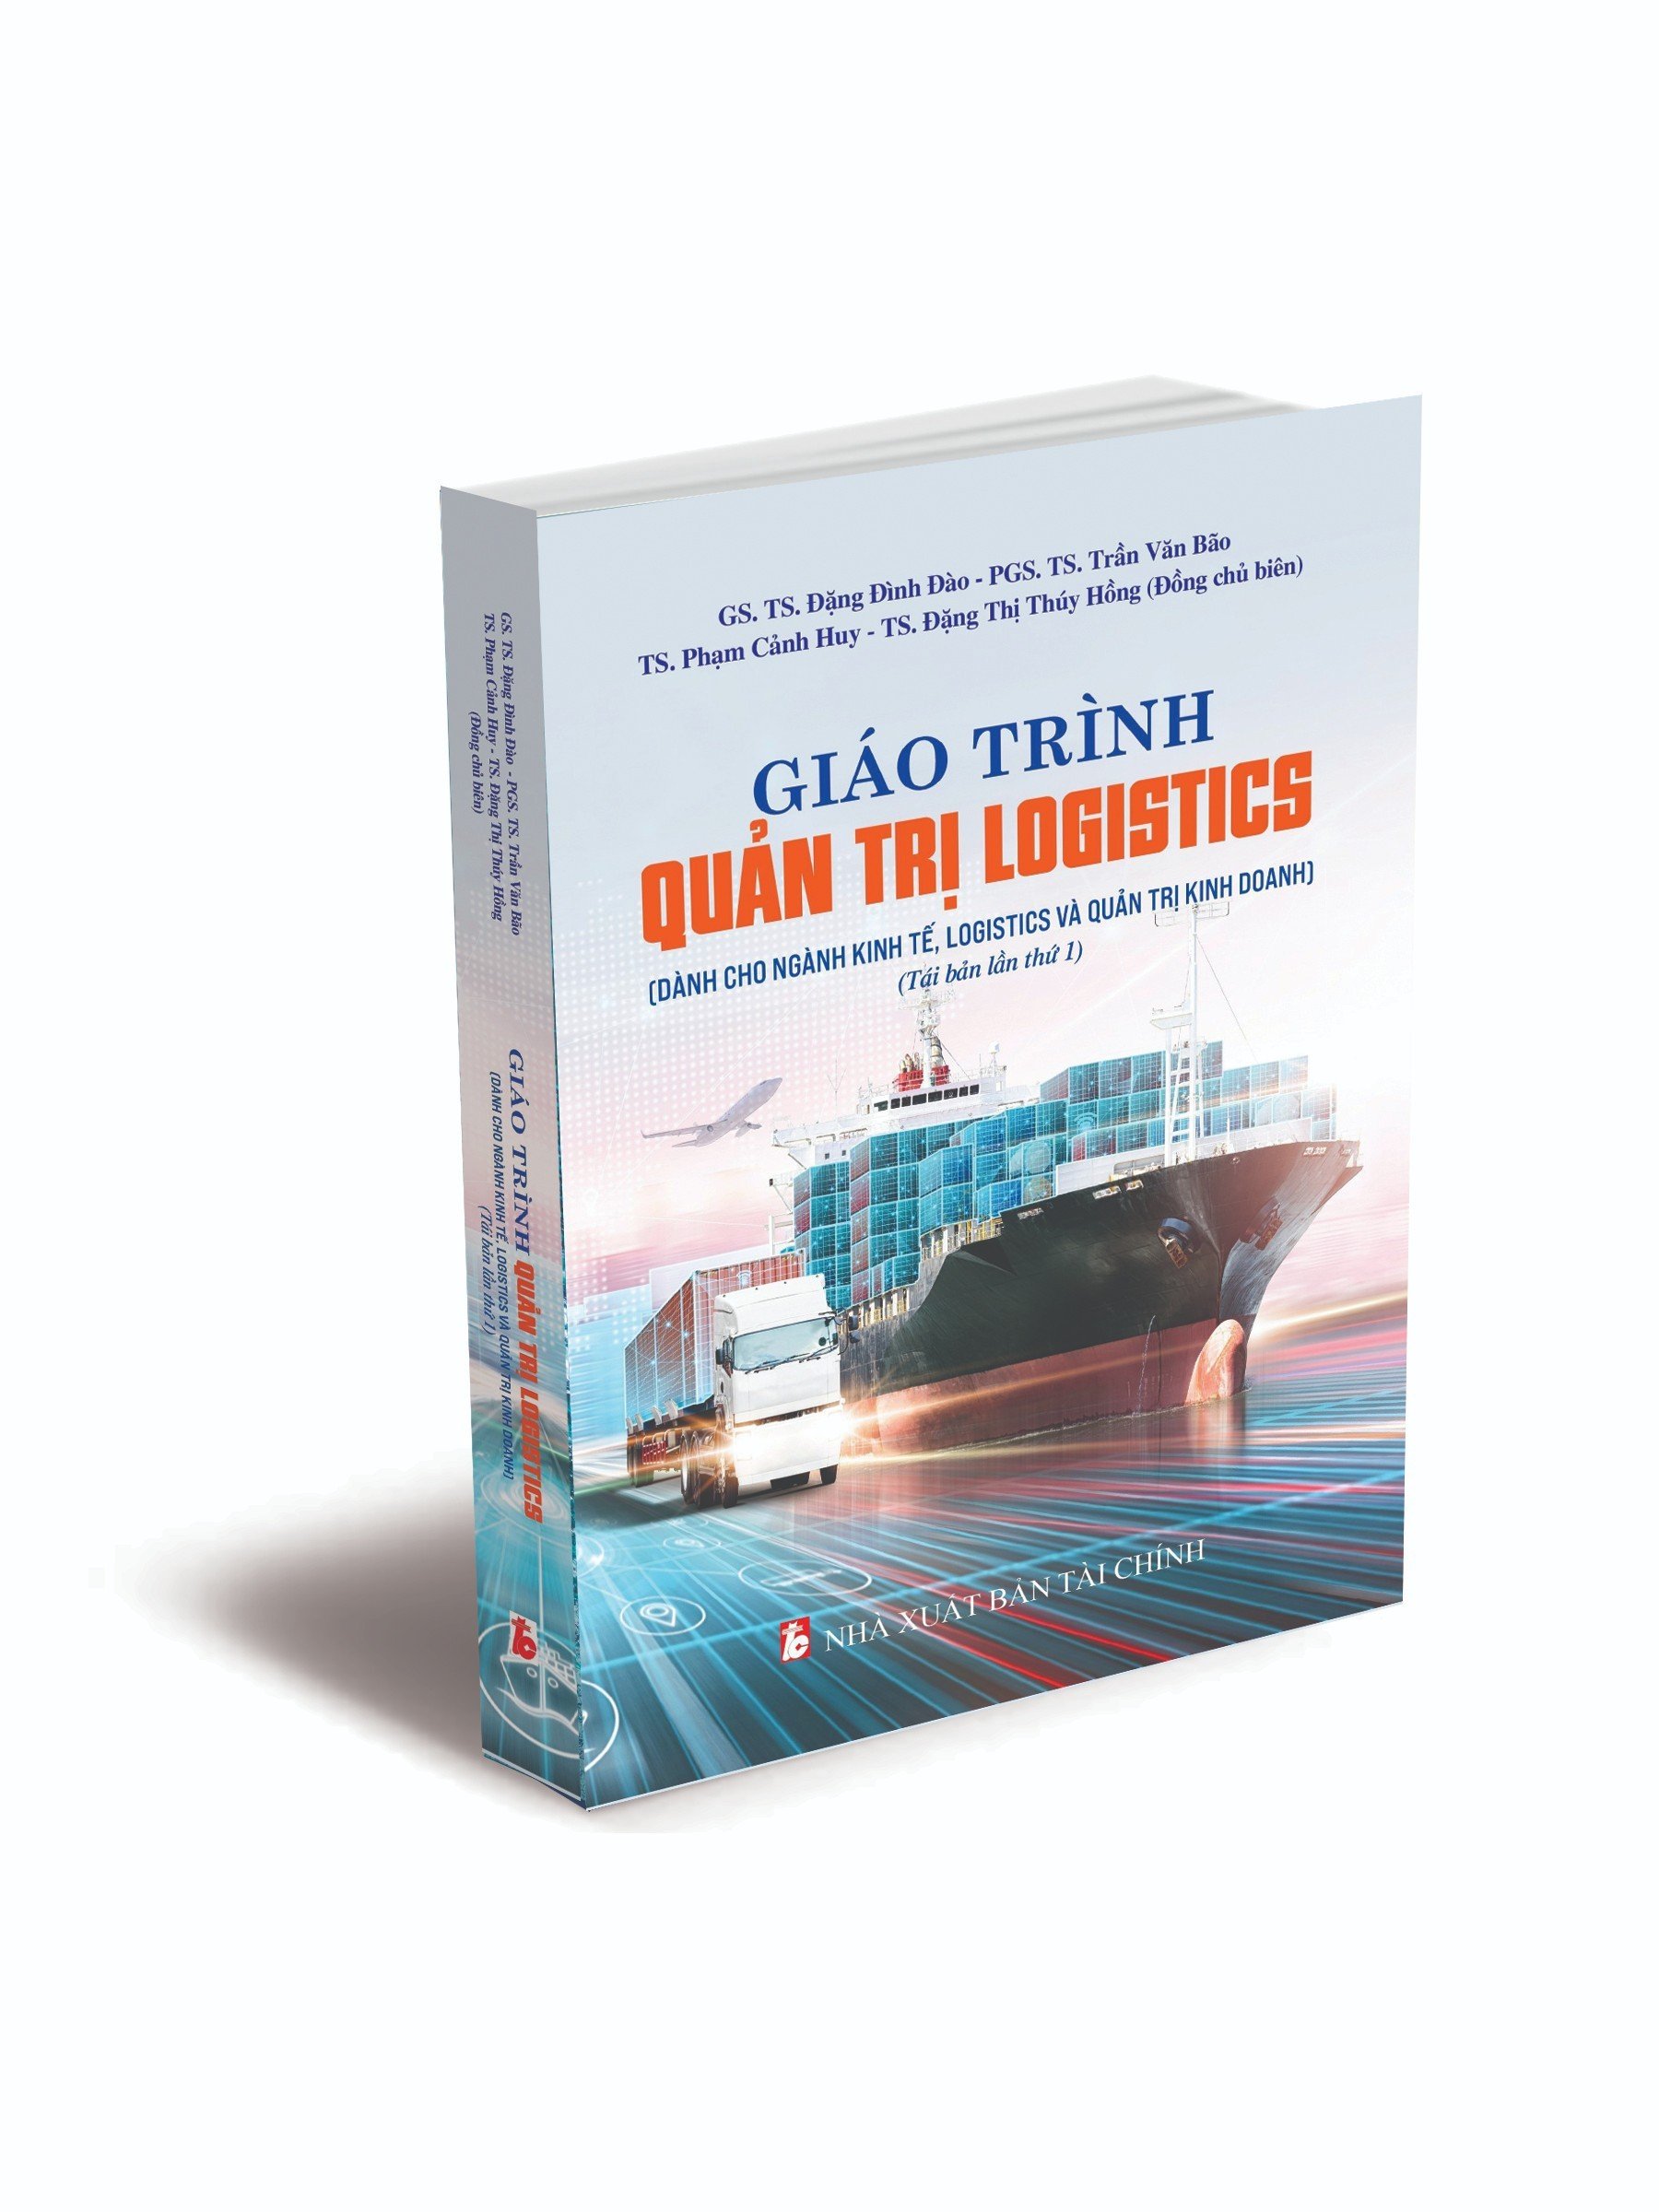 Giáo trình Quản trị Logistics (Dành cho ngành Kinh tế, Logistics và Quản trị kinh doanh) - Tái bản lần thứ 1